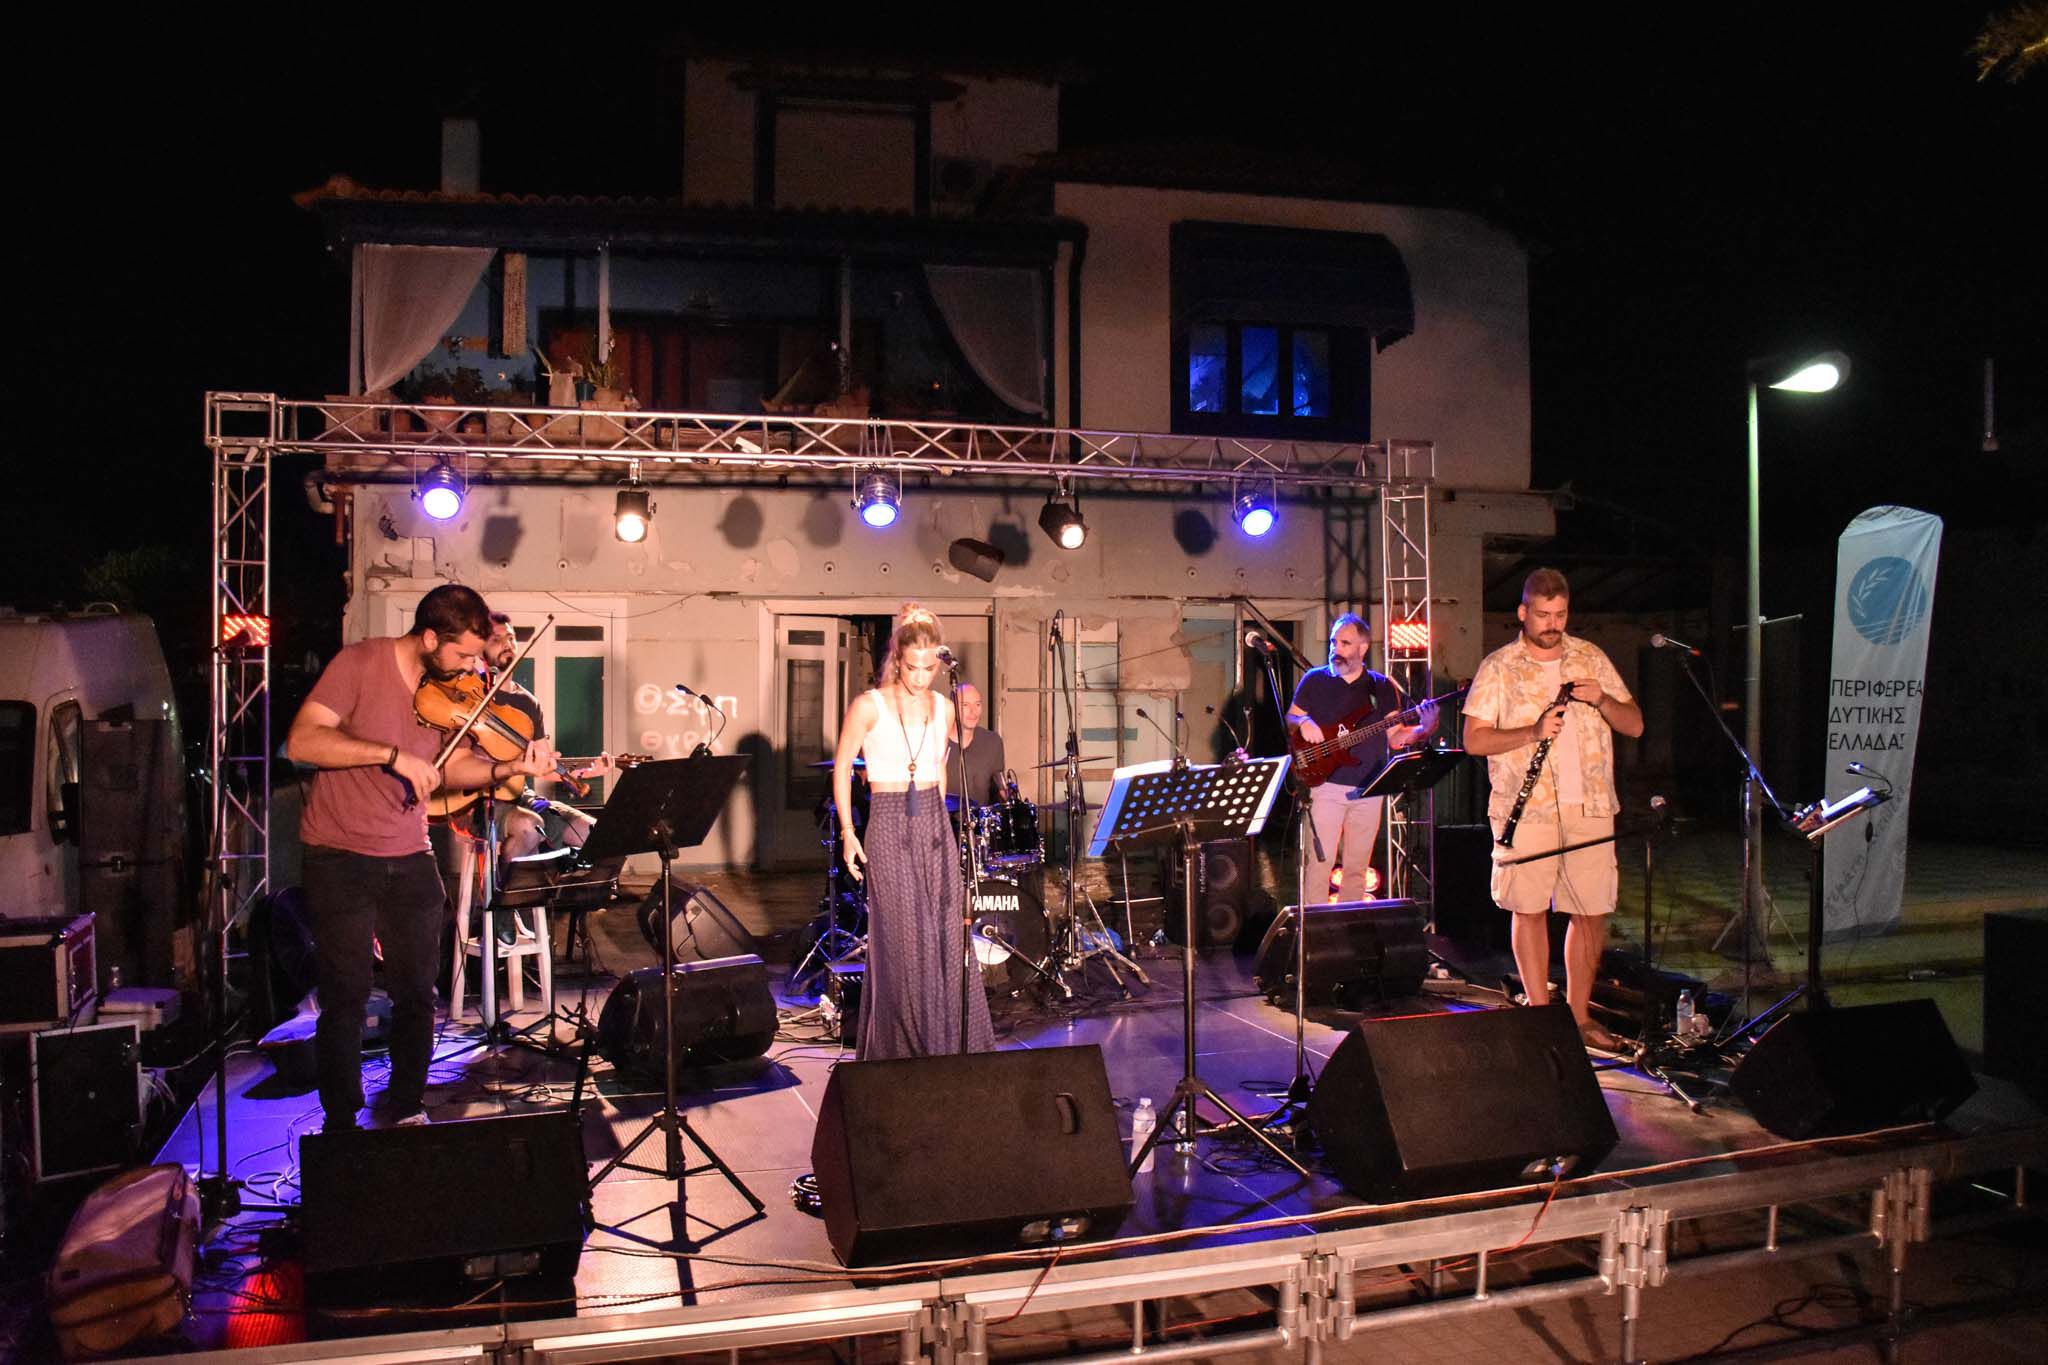 Νίκος Κοροβέσης: Μουσική πανδαισία στο φως της πανσελήνου χθες στην Κουρούτα- Μάγεψαν το κοινό οι Σαββέρια Μαργιολά και Θοδωρής Κοτονιάς (photos)